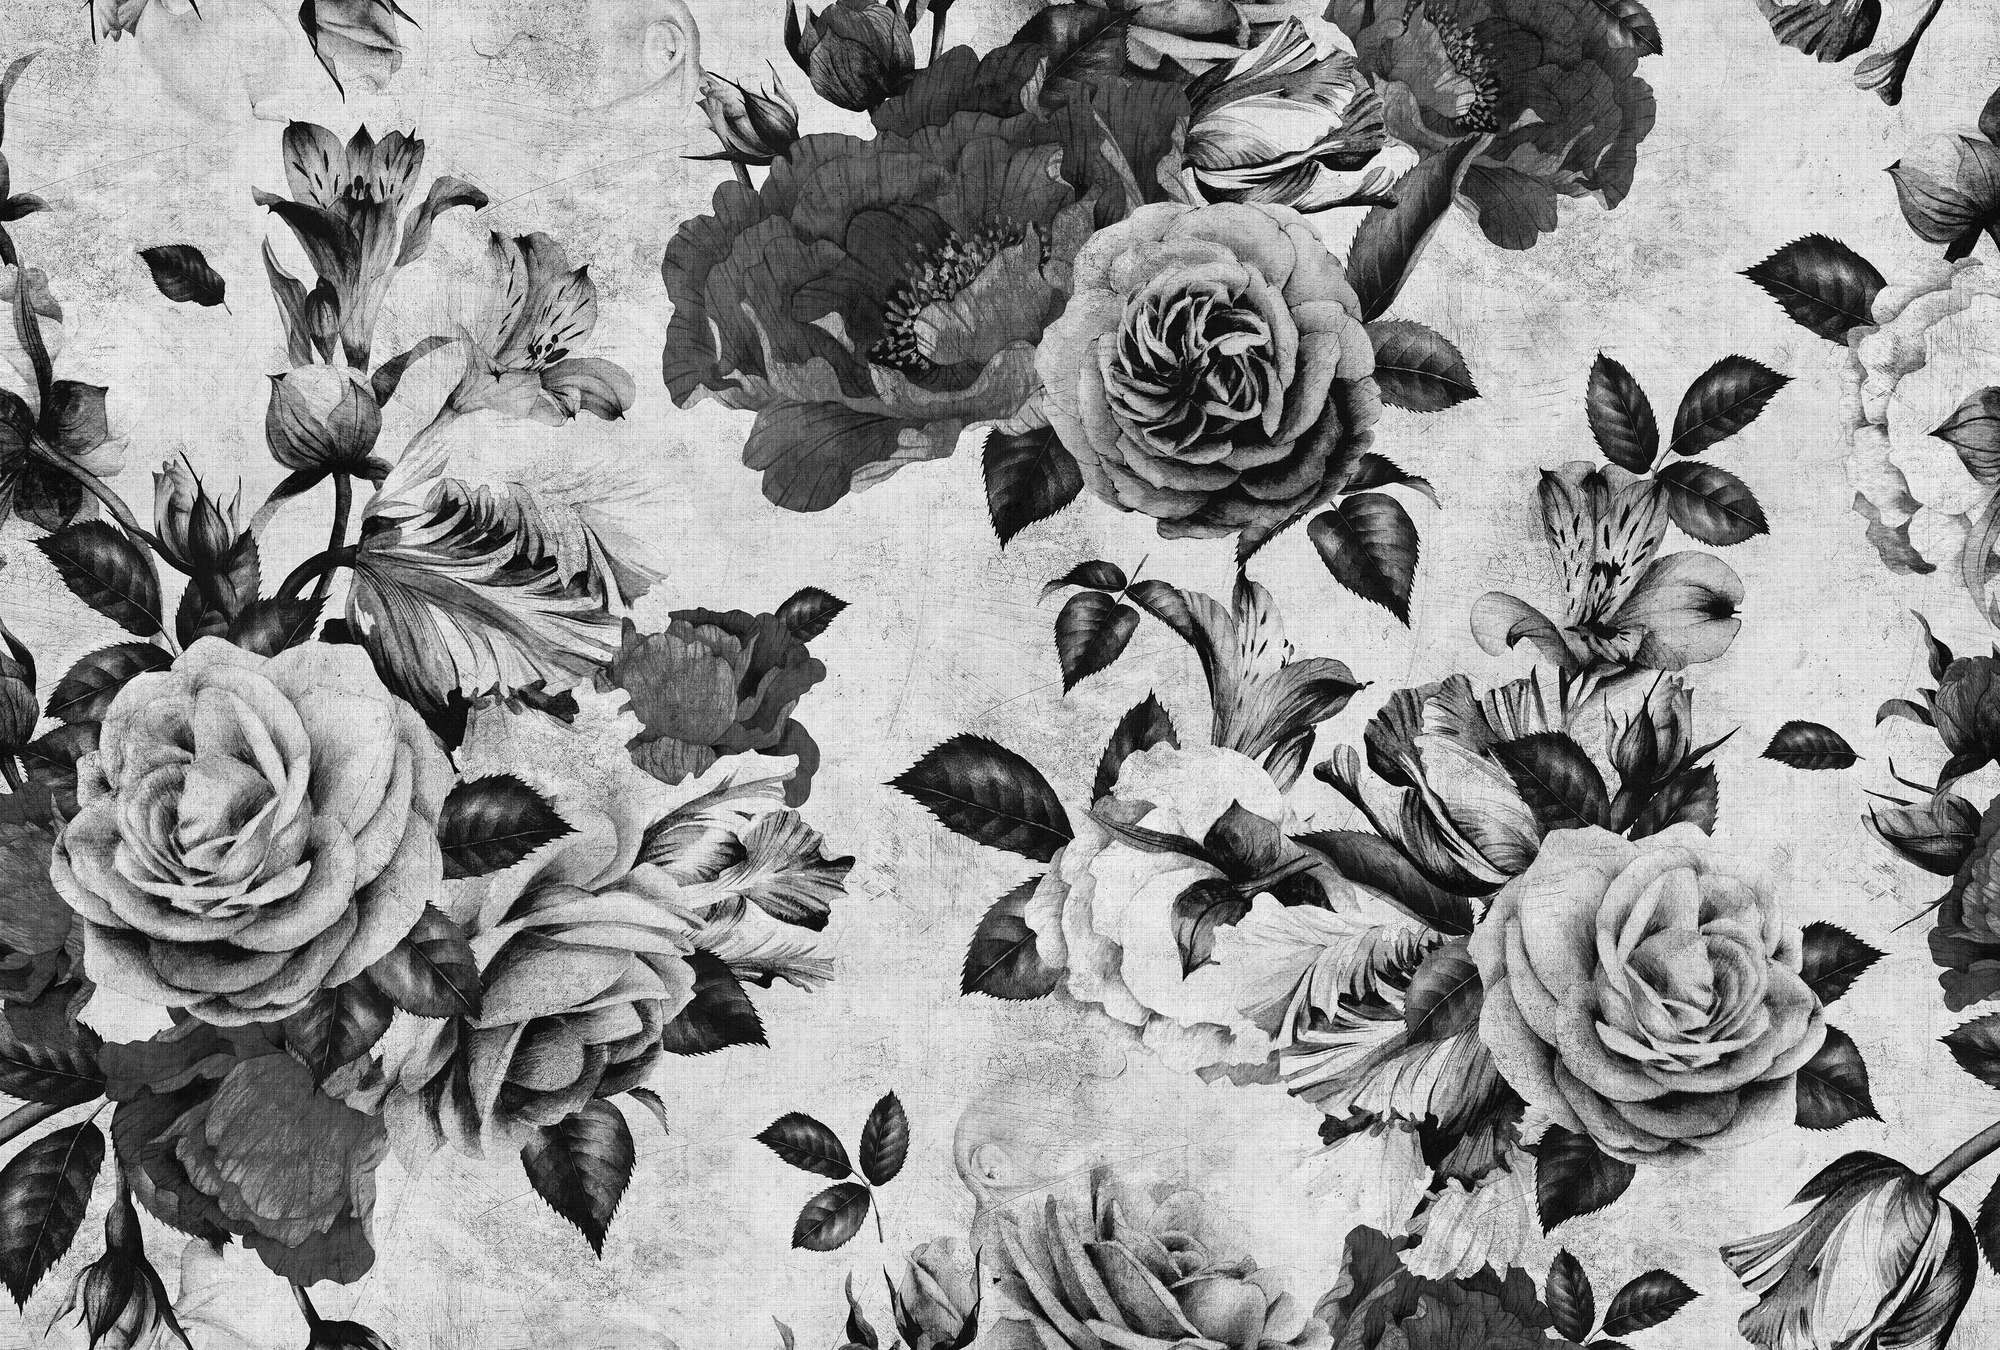             Spanish rose 1 - Carta da parati a rose con fiori bianchi e neri in struttura di lino naturale - Grigio, Nero | Liscio opaco
        